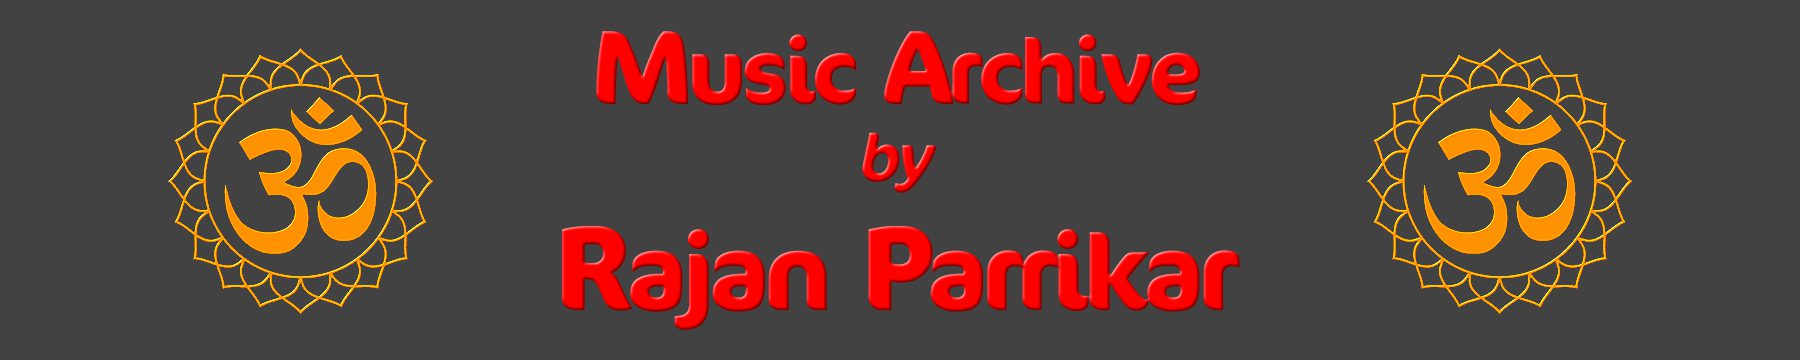 Rajan Parrikar Music Archive